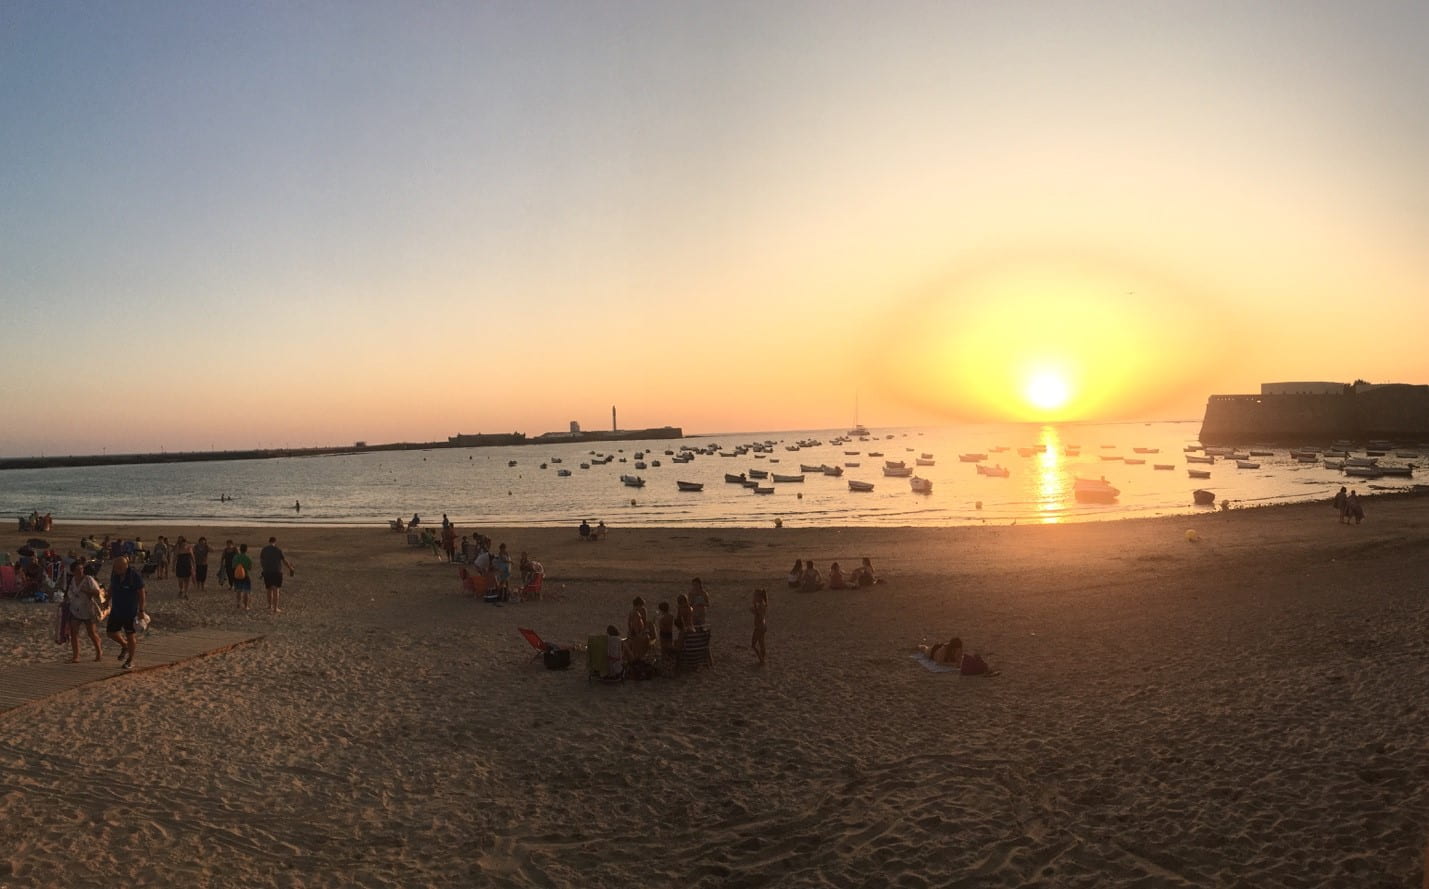 Sunset over Spanish harbor taken from beach